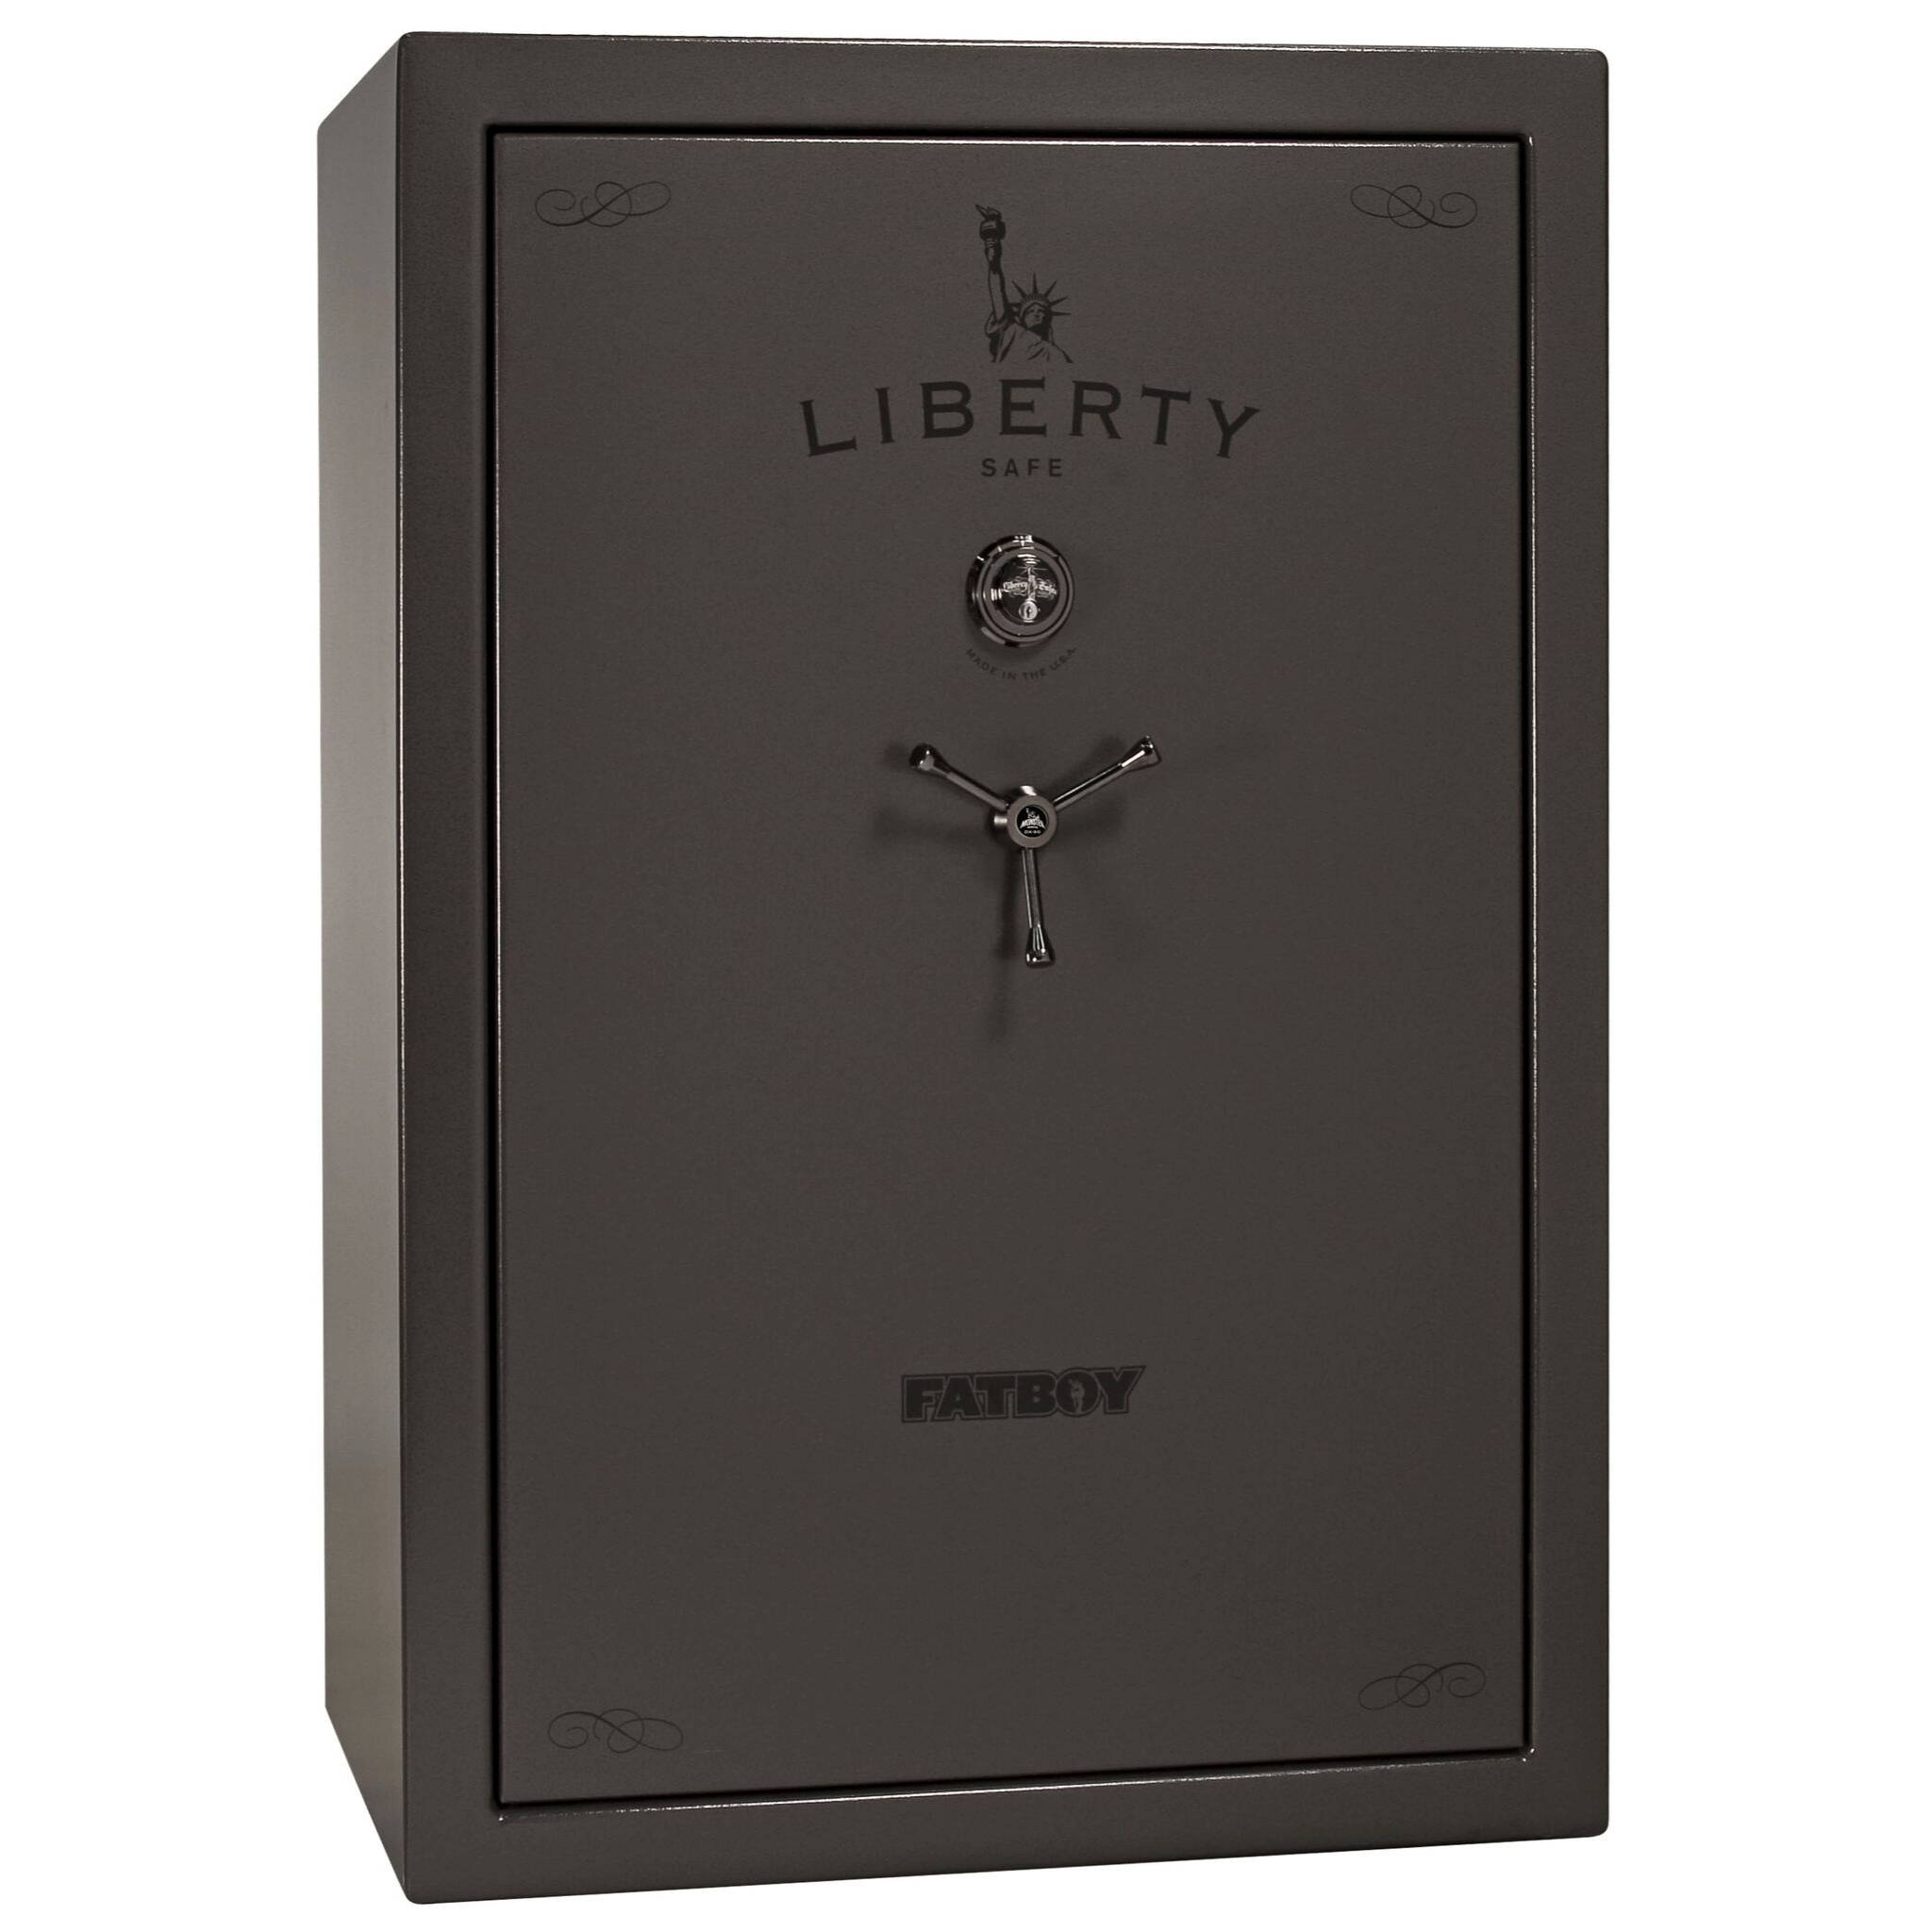 Liberty Safe Fatboy safe series